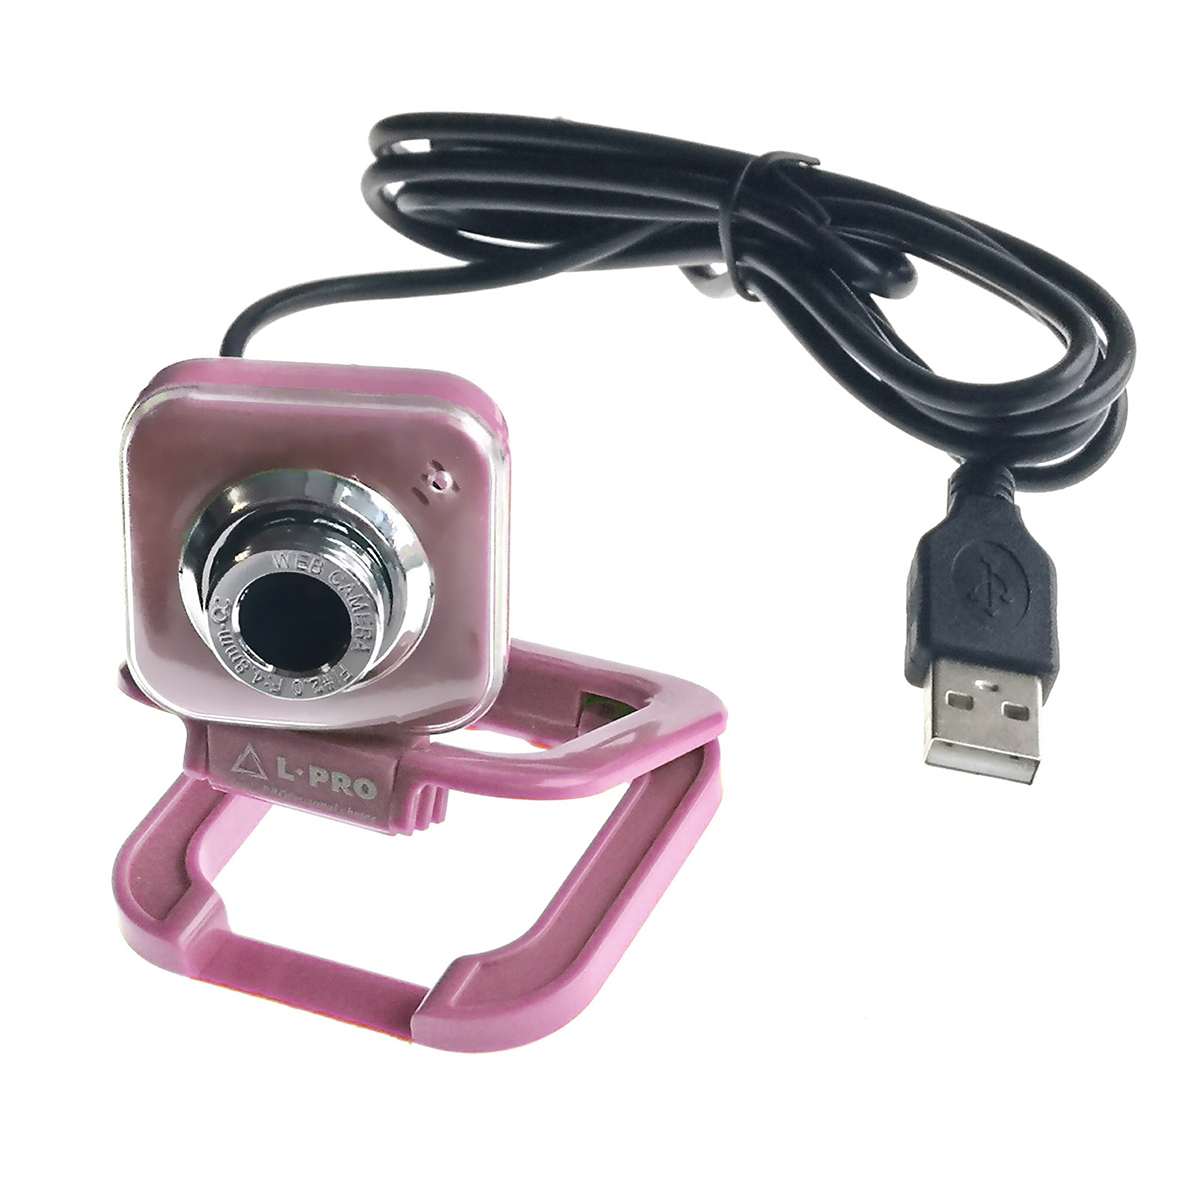 Веб-камера L-PRO 917/1406, CMOS, 640x480, 0.3Мп, USB, цвет фиолетовый.